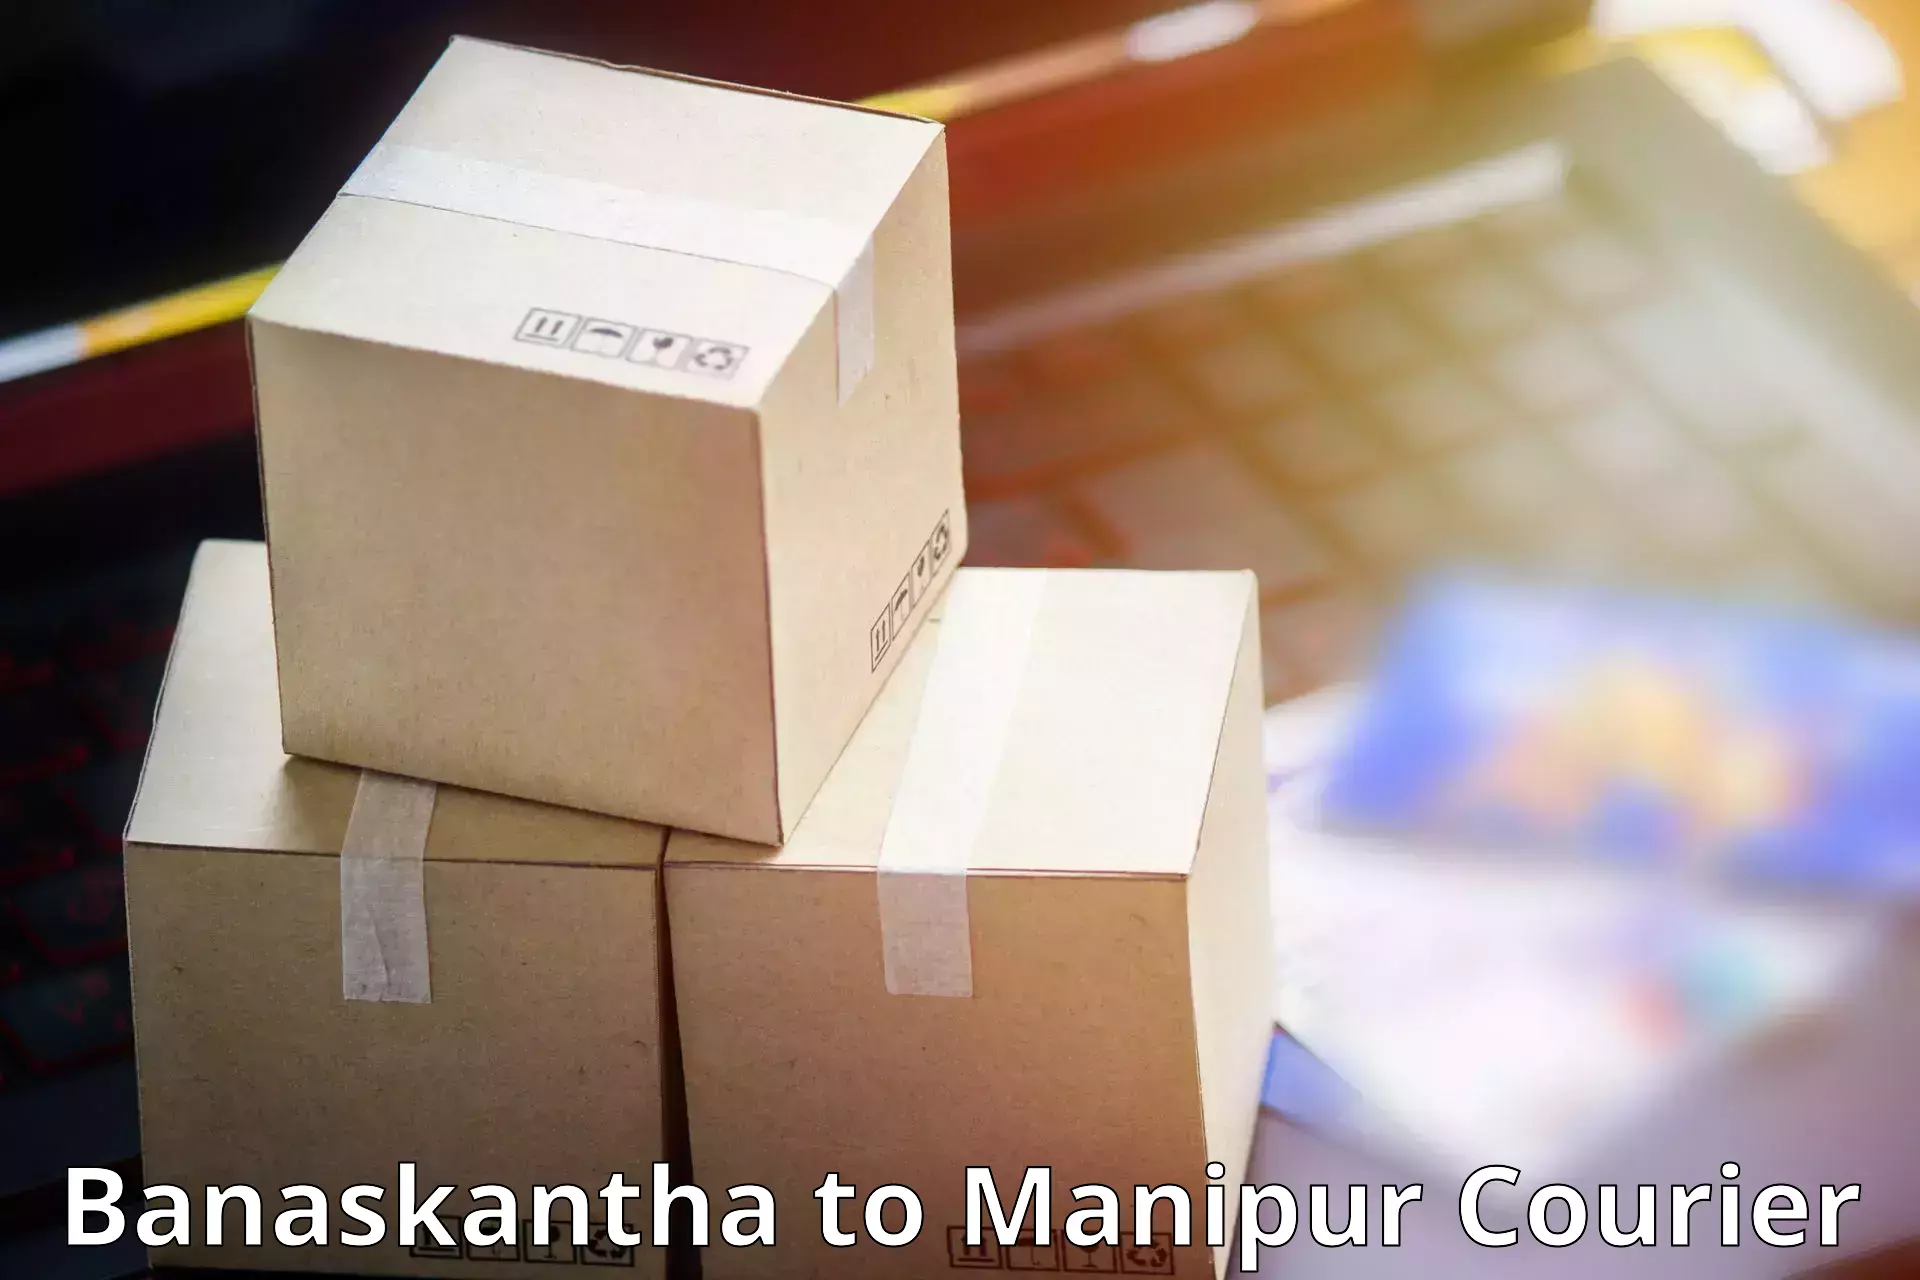 Nationwide parcel services Banaskantha to Moirang